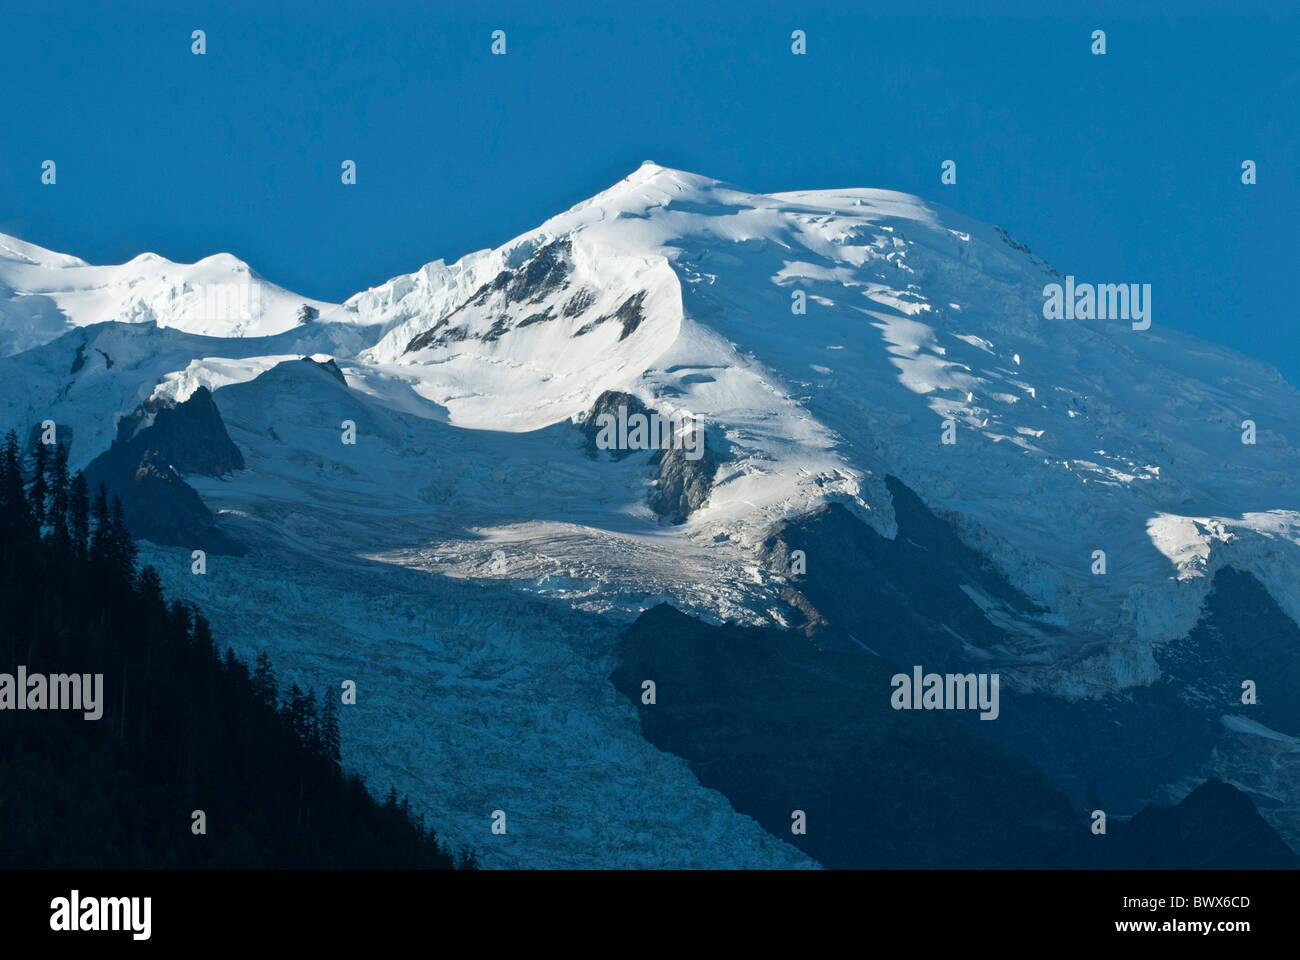 Glacier des Bossons massif du Mont Blanc, Chamonix, Haute-Savoie, France. Stock Photo